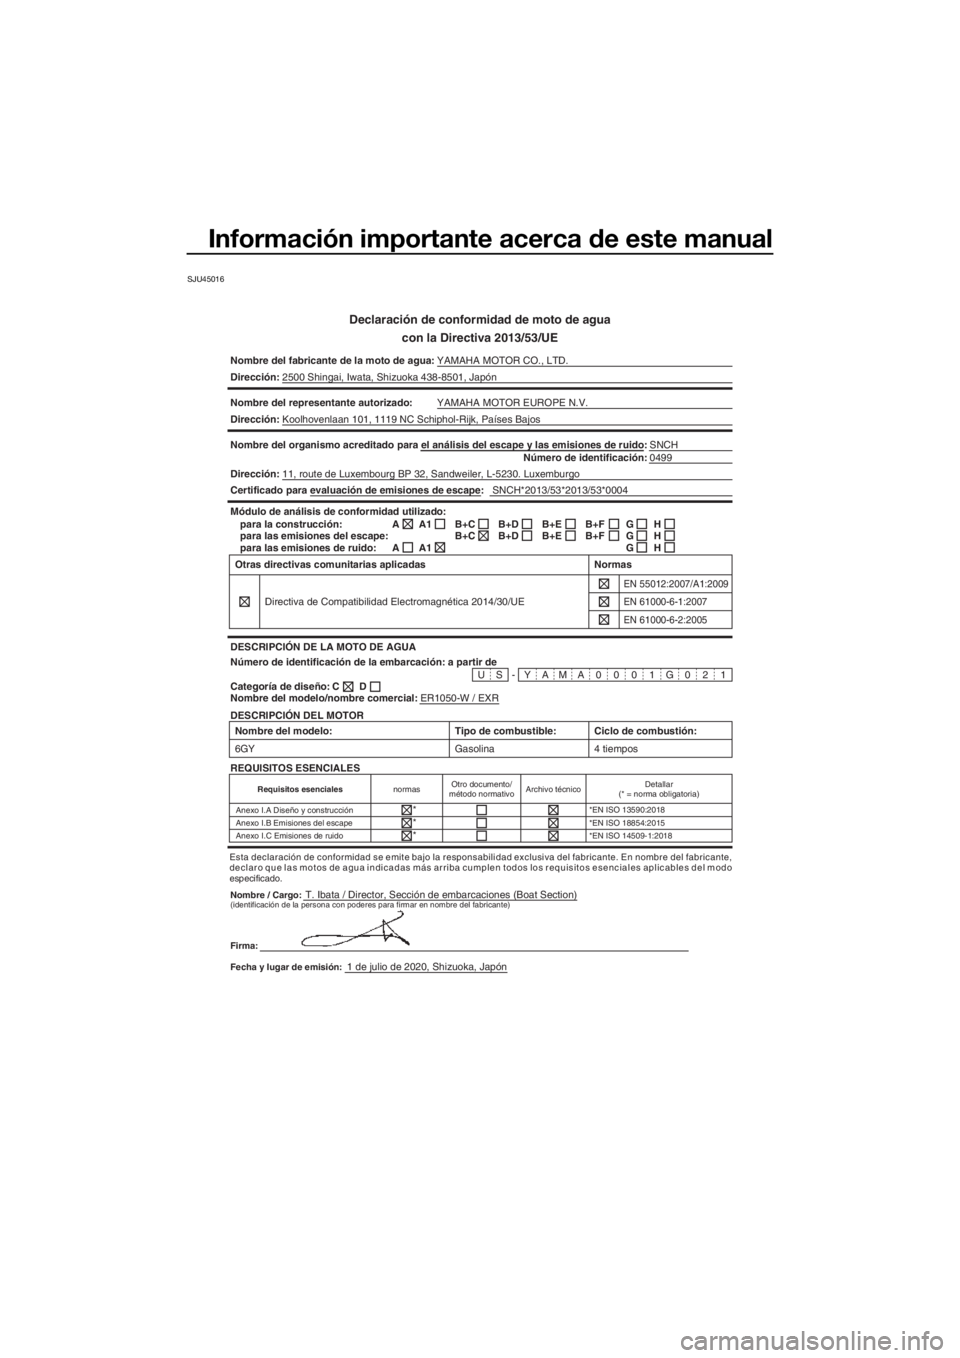 YAMAHA EXR 2021  Manuale de Empleo (in Spanish) Información importante acerca de este manual
SJU45016
Declaración de conformidad de moto de agua
con la Directiva 2013/53/UE
Nombre del fabricante de la moto de a gua:YAMAHA MOTOR CO., LTD.
Direcci�